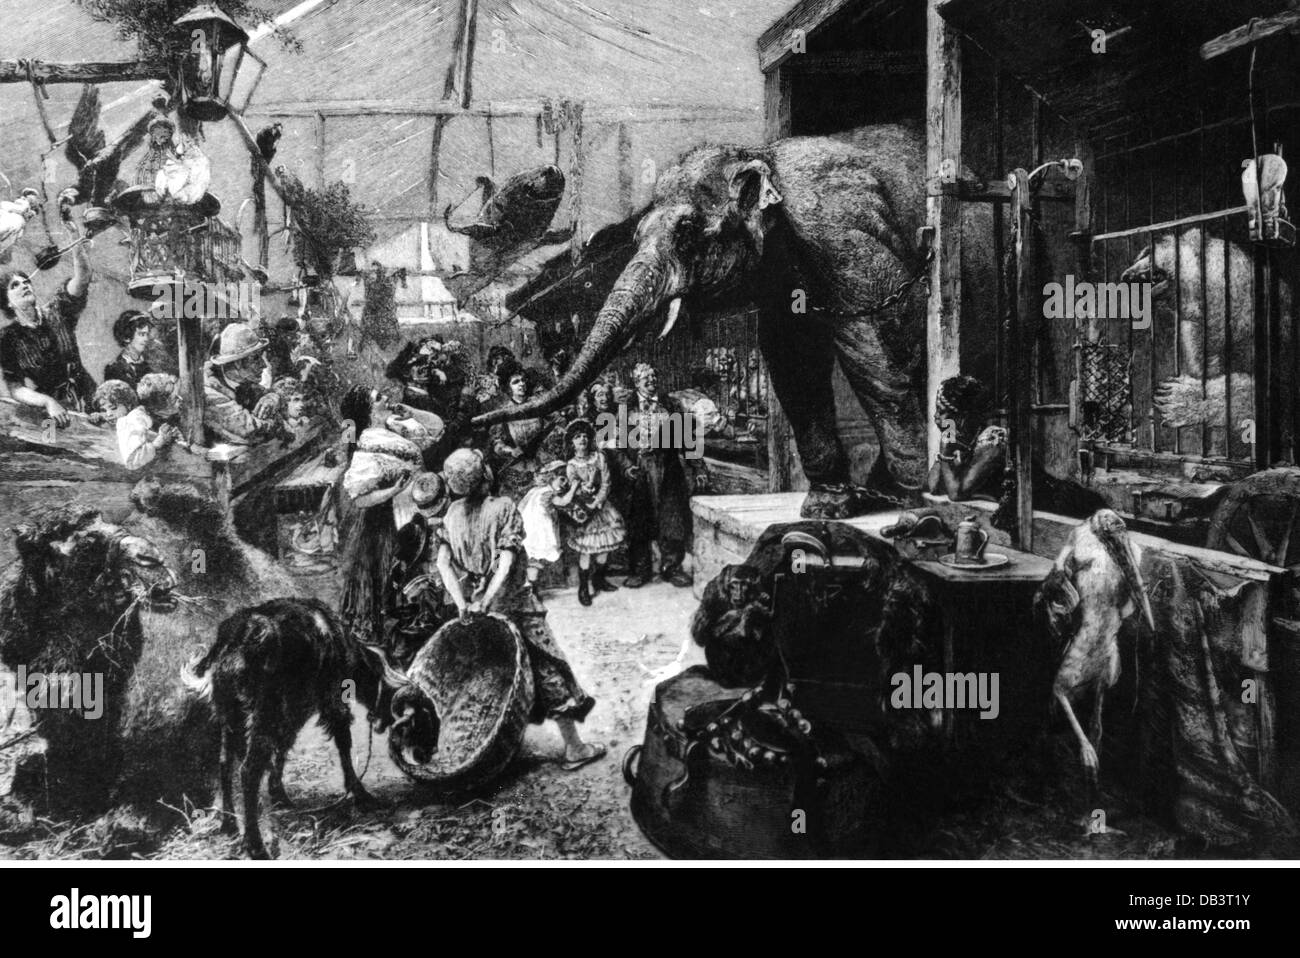 Festivités, fêtes, spectacles d'animaux, peinture, par Paul Friedrich Meyerheim (1842 - 1915), vers 1885, droits additionnels-Clearences-non disponible Banque D'Images